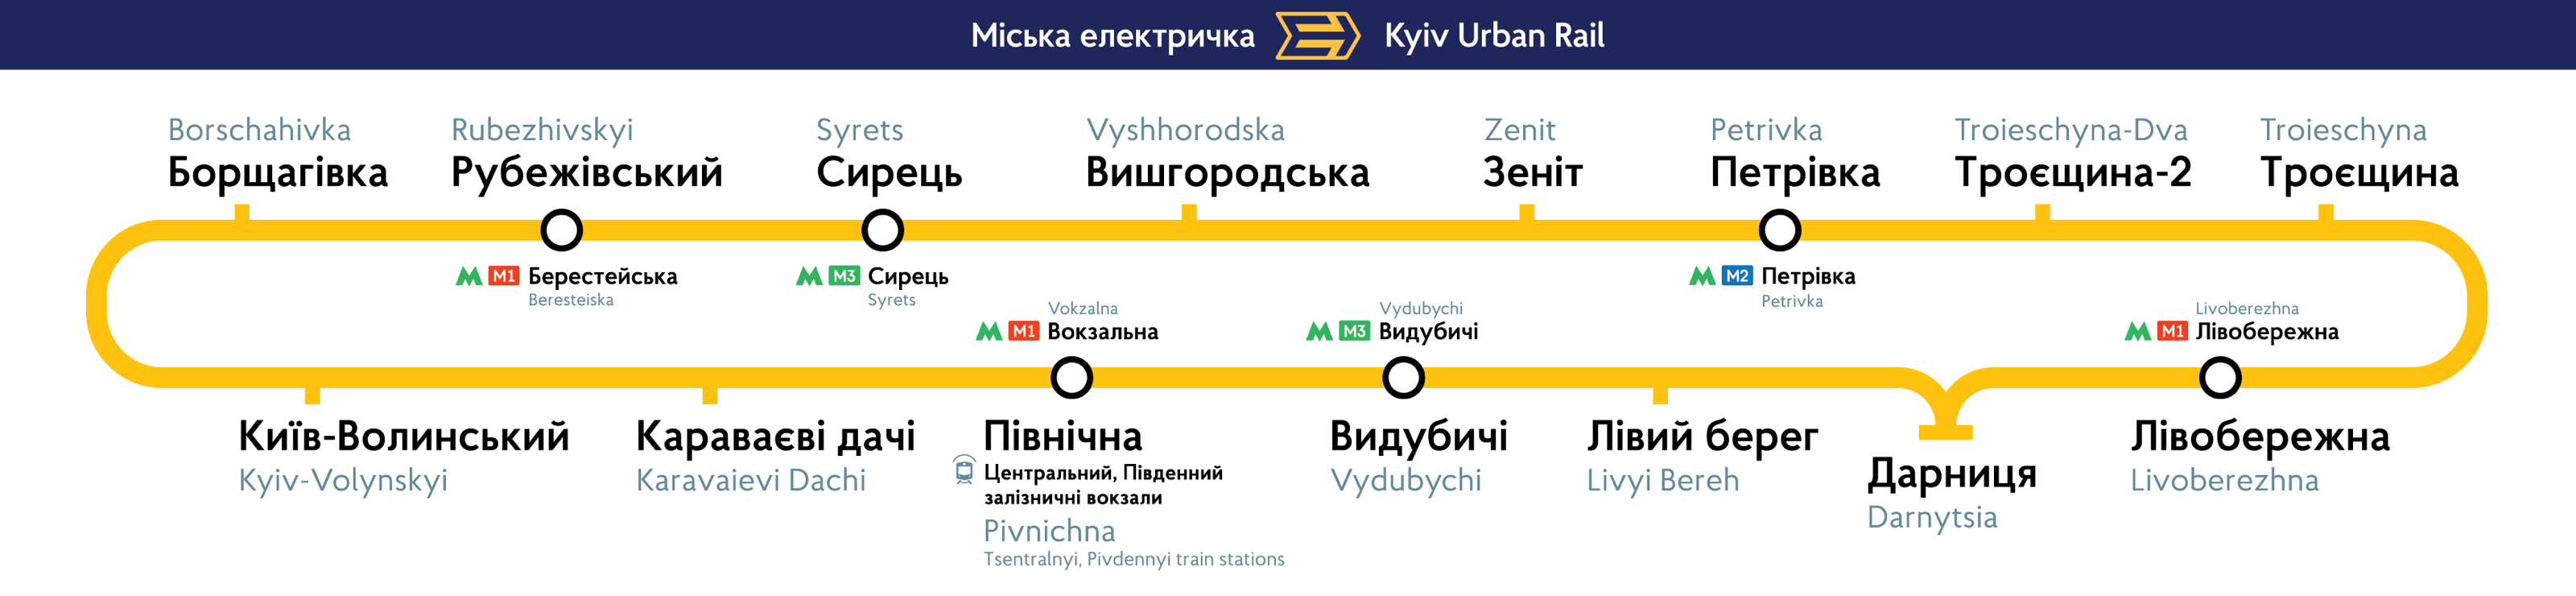 Схема движения киевской городской электрички